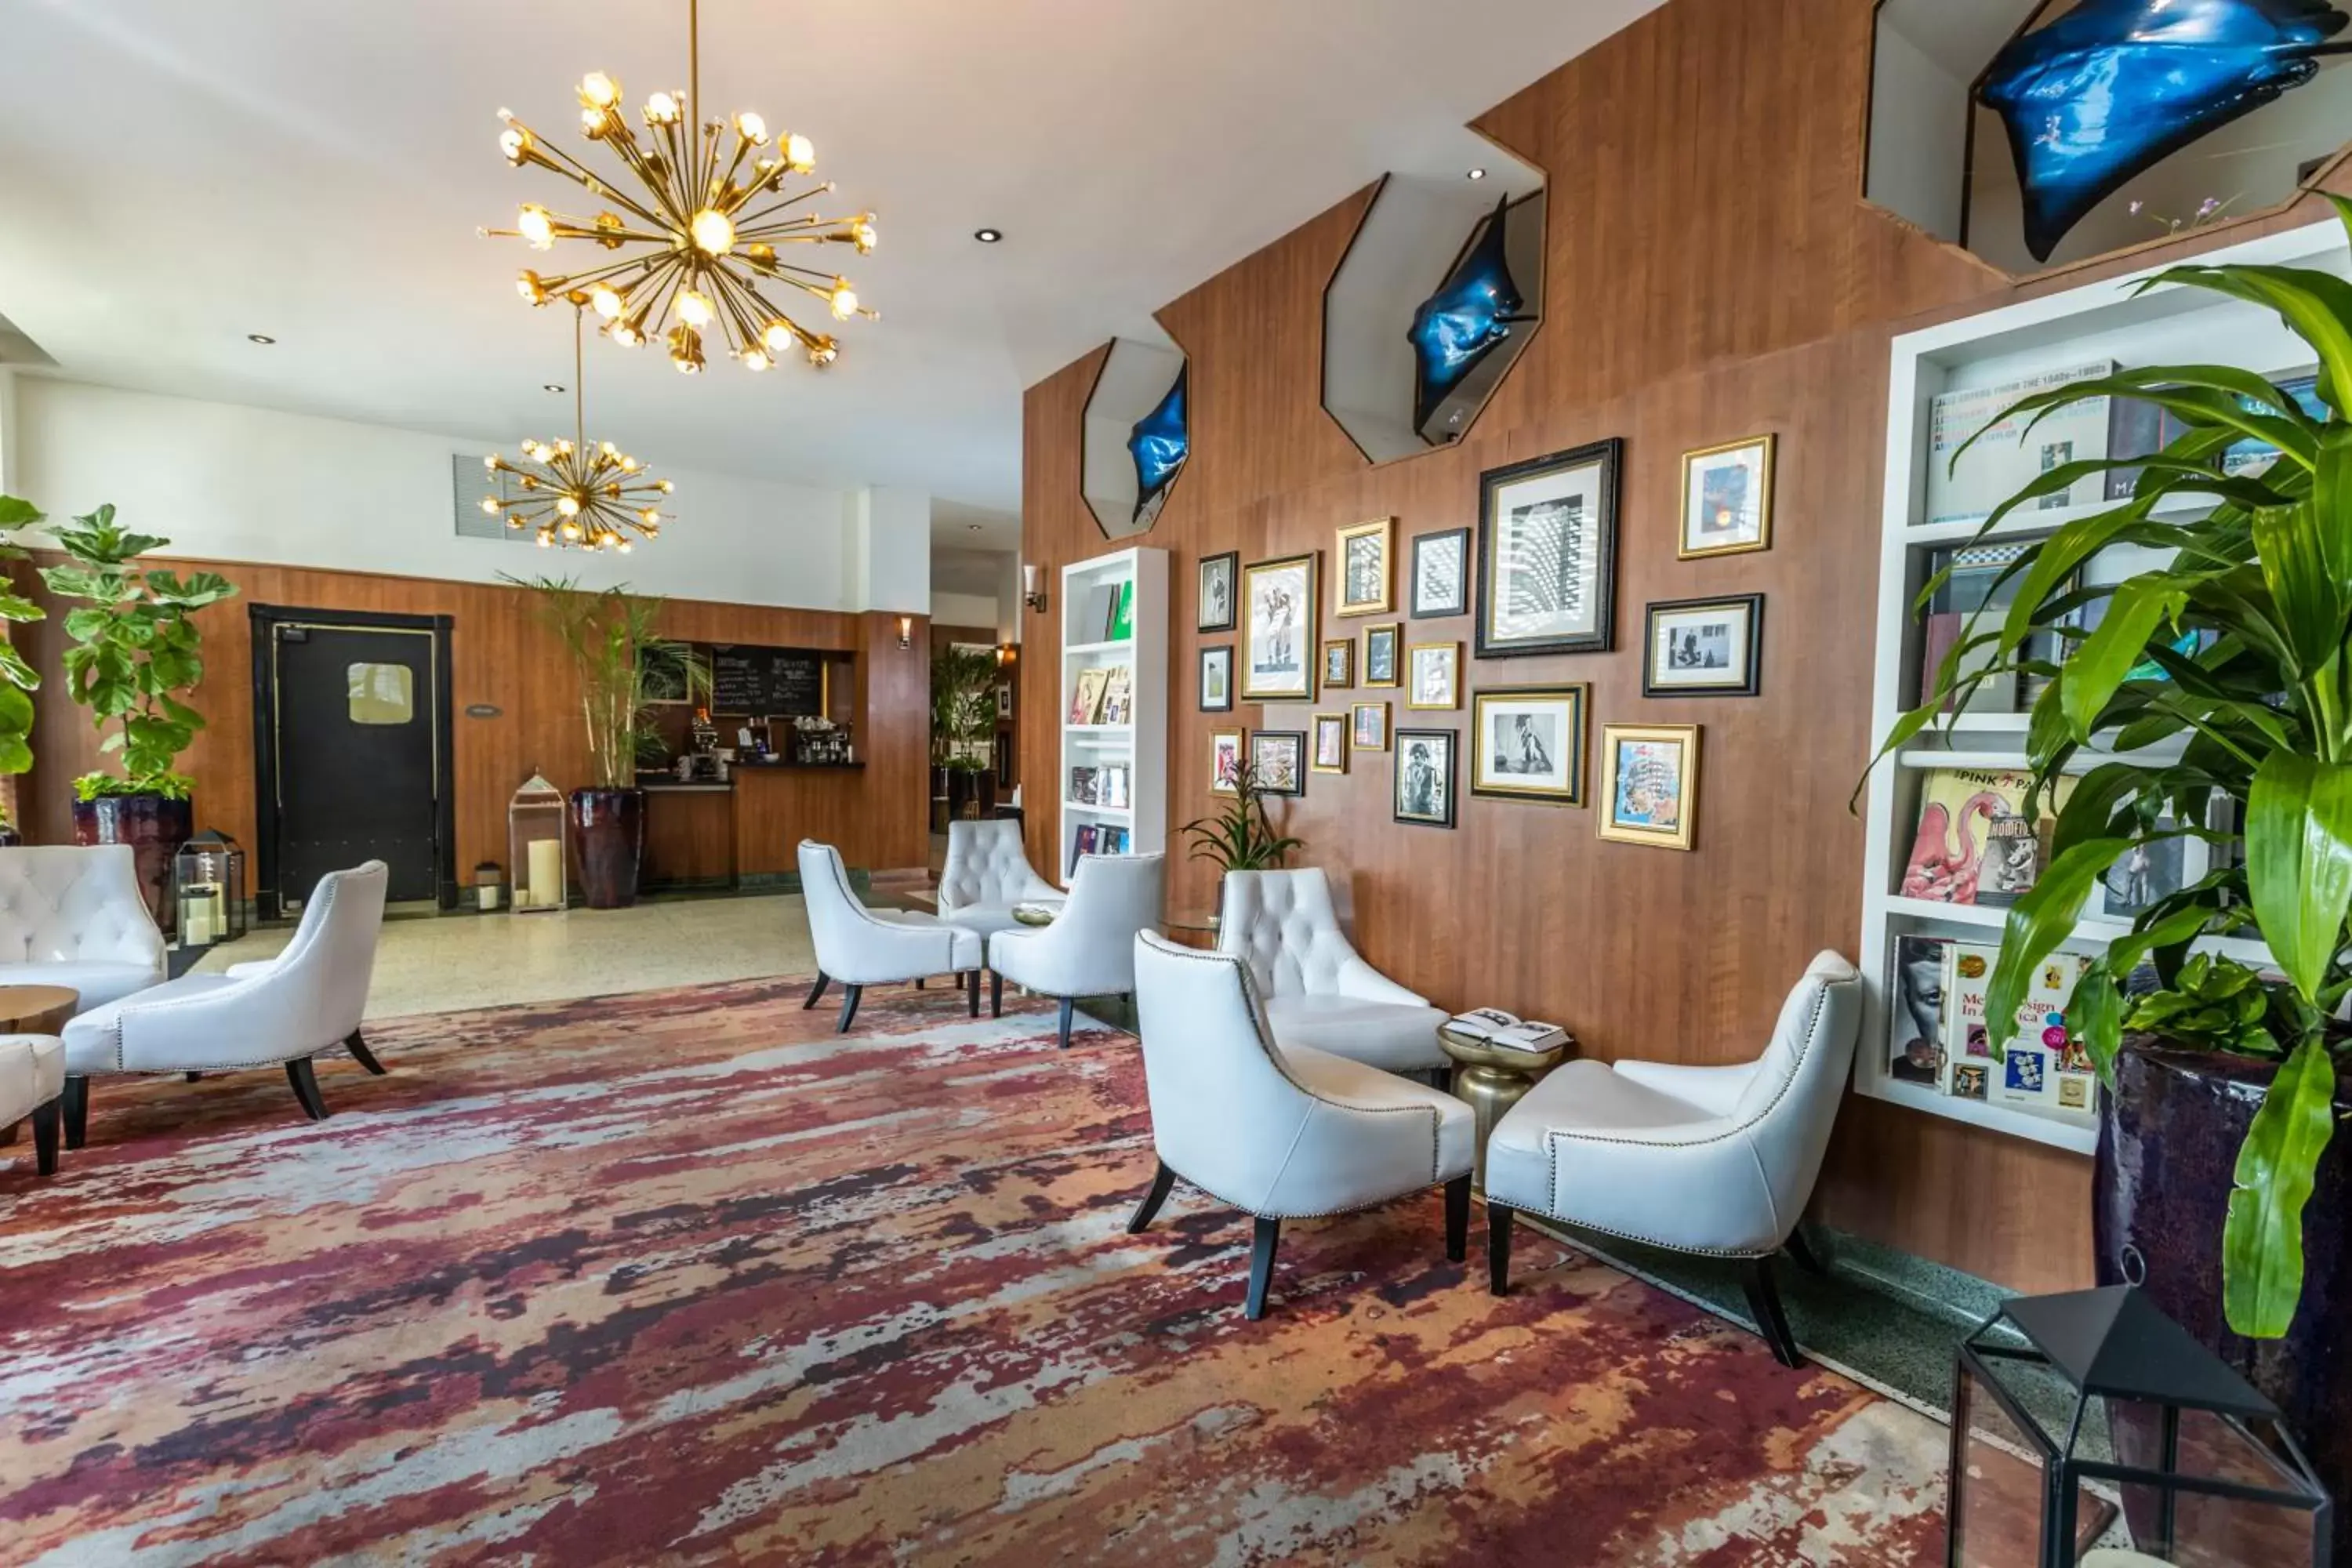 Lobby or reception, Lobby/Reception in Hotel Croydon